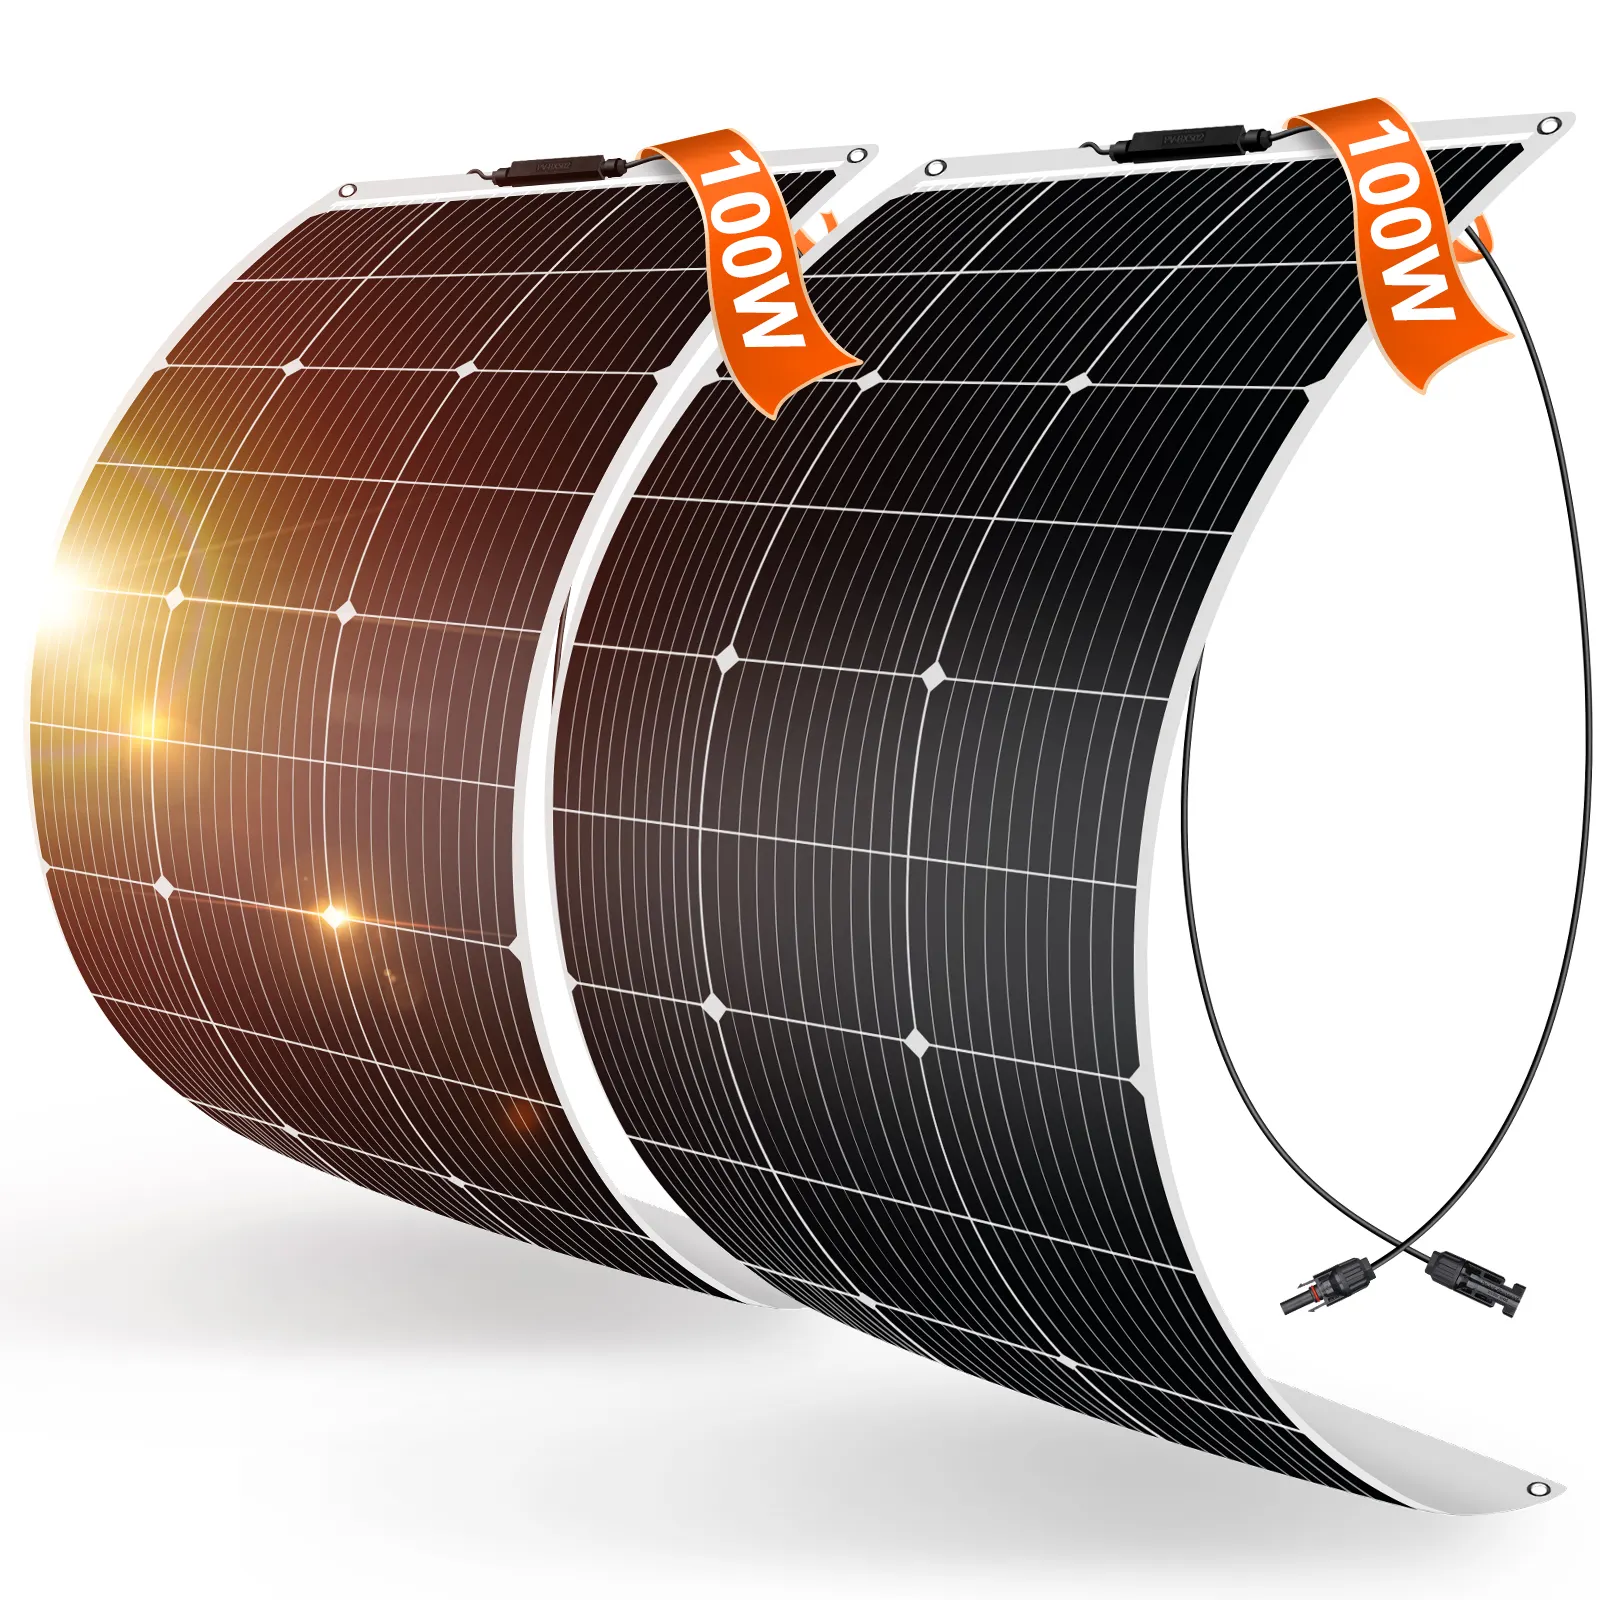 डॉकिओ 2 पीसी 100 डब्ल्यू लचीला सौर पैनल के साथ आरवी, कारवां, नौका और गोल्फ कार्ट के लिए लचीला सौर पैनल